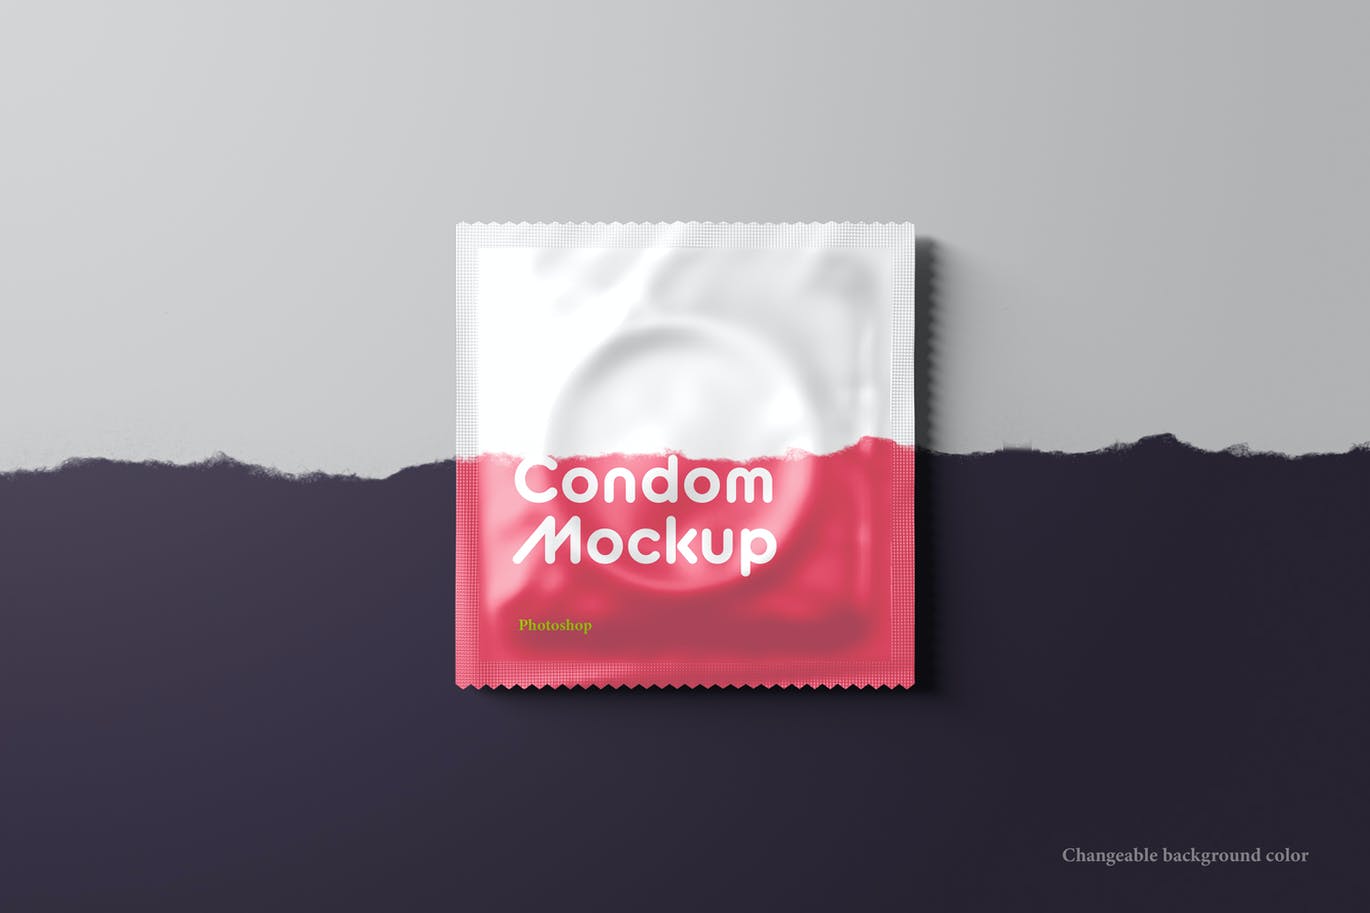 安全套避孕套品牌包装设计样机PSD贴图样机PS样机素材 – 图渲拉-高品质设计素材分享平台